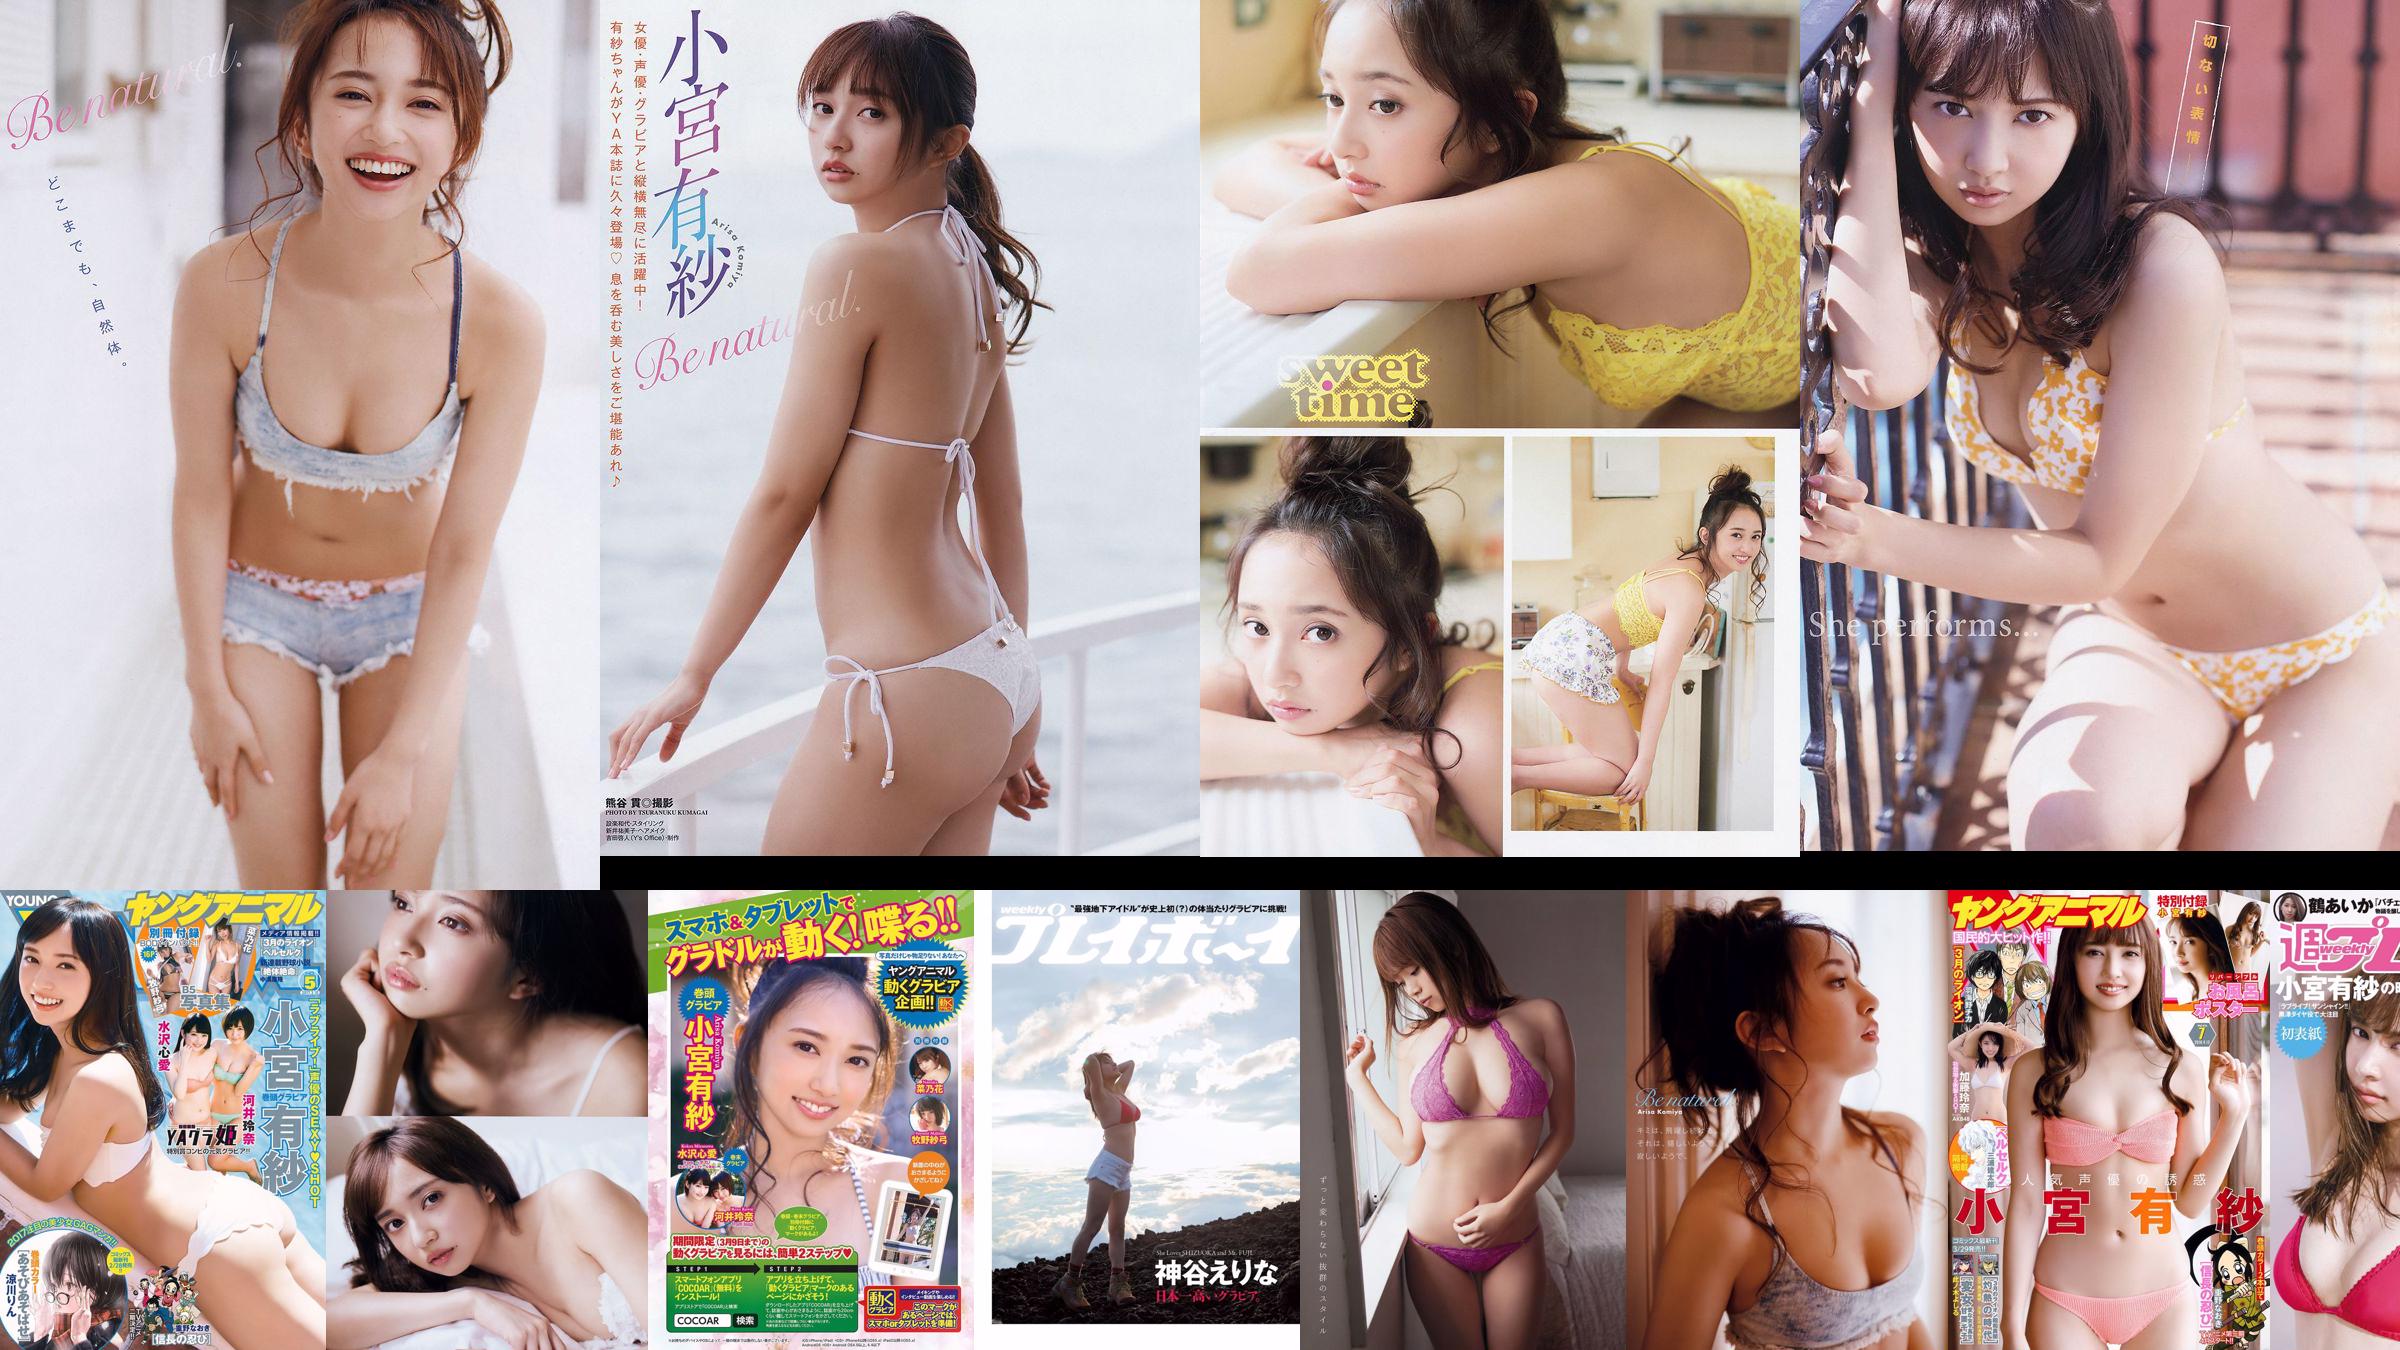 Arisa Komiya Aya Asahina Yuuna Suzuki Miwako Kakei STU48 Honoka Mai Hakase Riho Yoshioka [Weekly Playboy] 2018 No.07 Photo Miwako No.6c3e53 Pagina 1